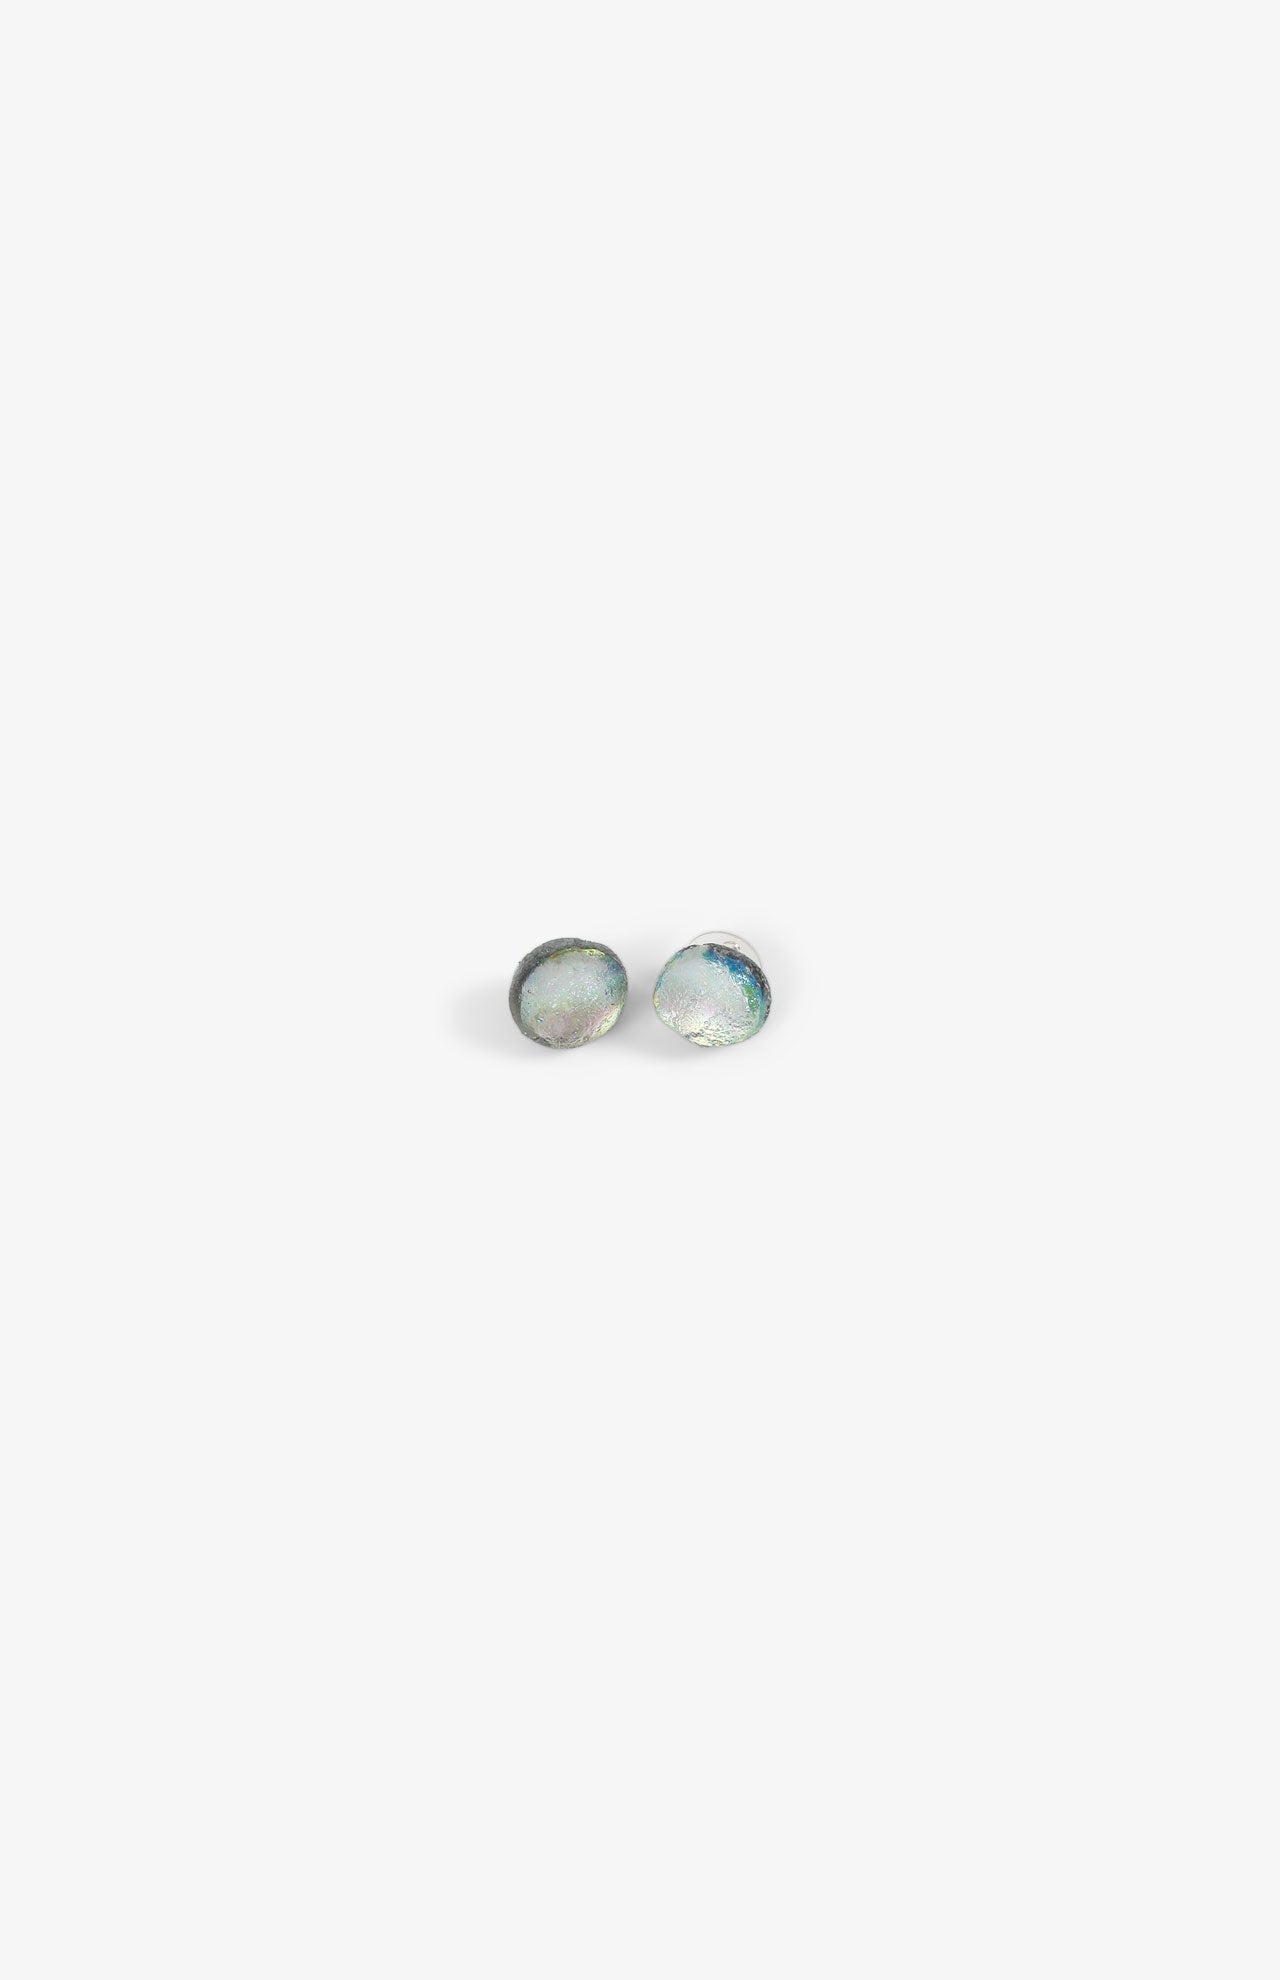 Boucles d'oreilles Simple Météorite - Transparentes Fond Gris - Fermoir Argent